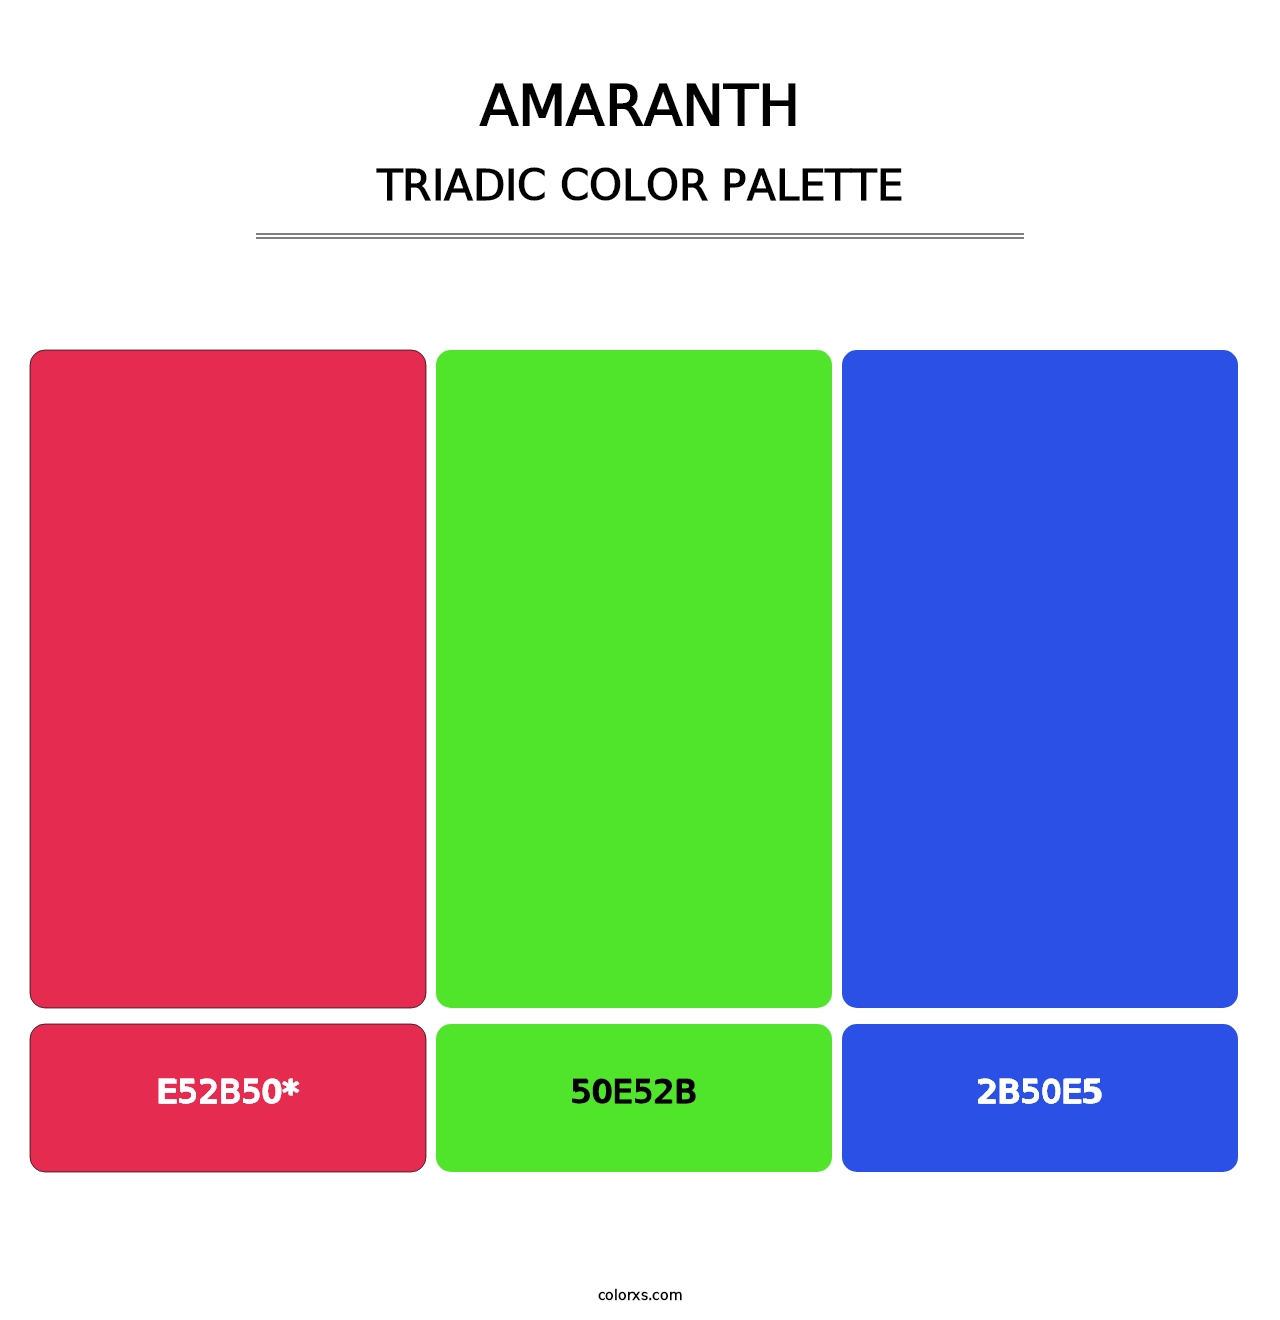 Amaranth - Triadic Color Palette